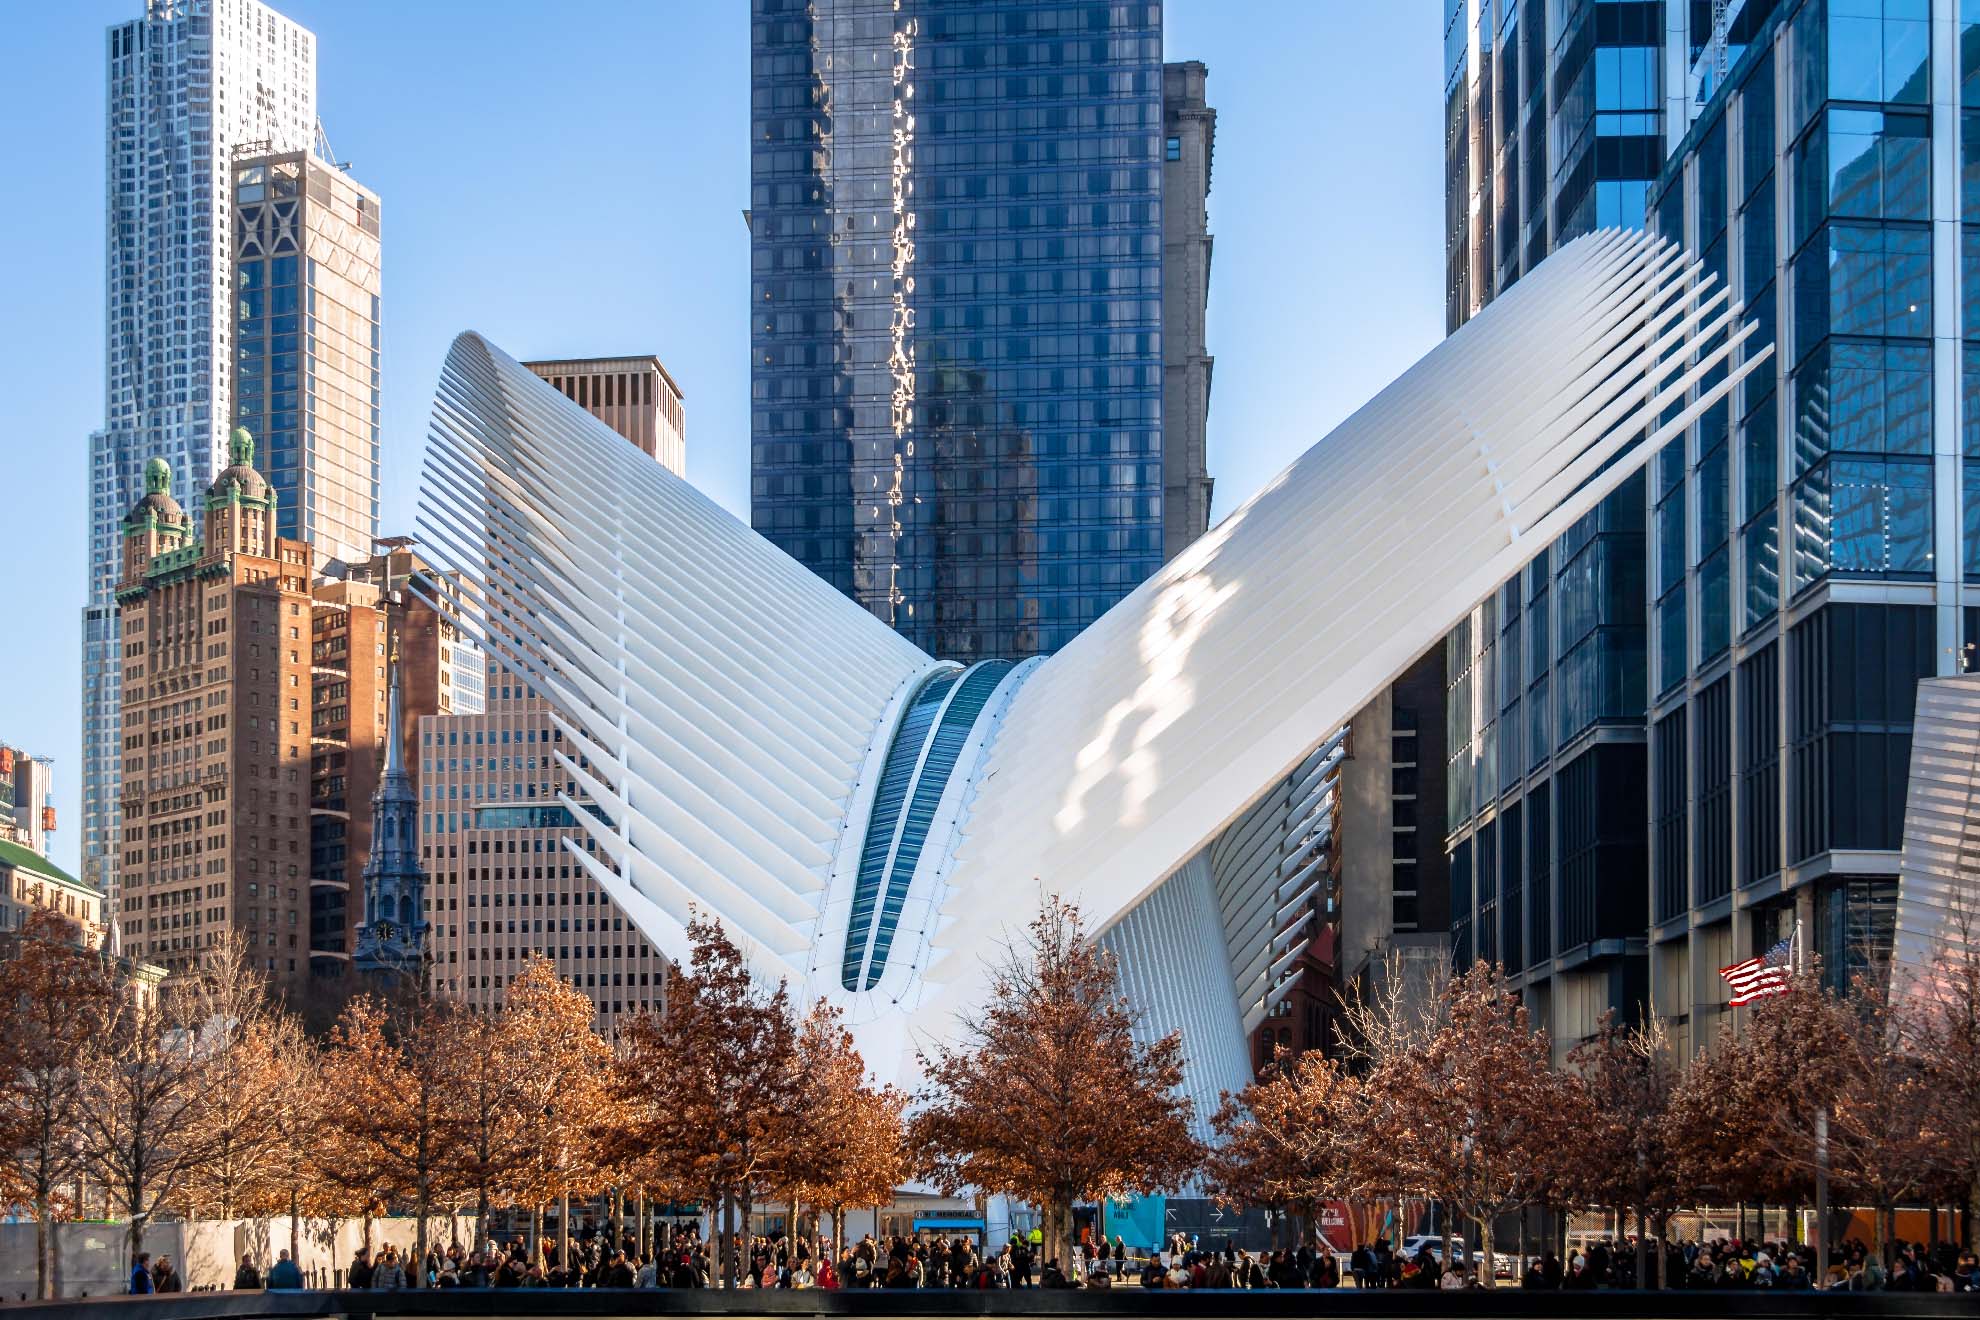 Intercambiador de transportes en el World Trade Center de Nueva York, un proyecto de Santiago Calatrava. Imagen: Alamy stock photo